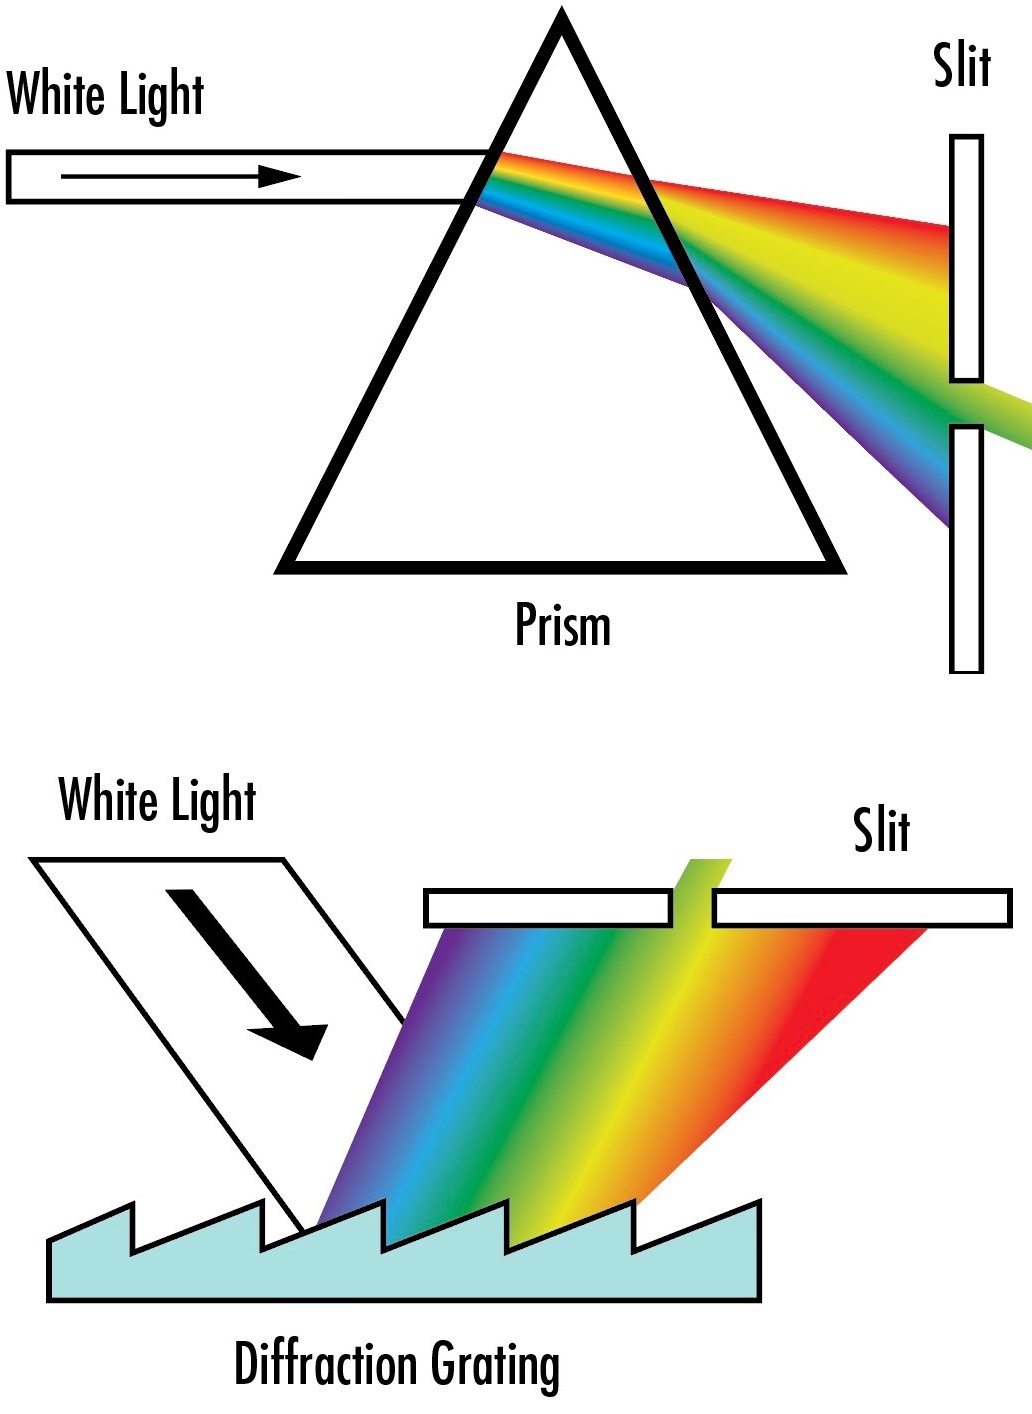 Alors que les prismes de dispersion séparent les longueurs d'onde par réfraction (en haut), les réseaux de diffraction séparent les longueurs d'onde par diffraction en raison de leur structure de surface (en bas)